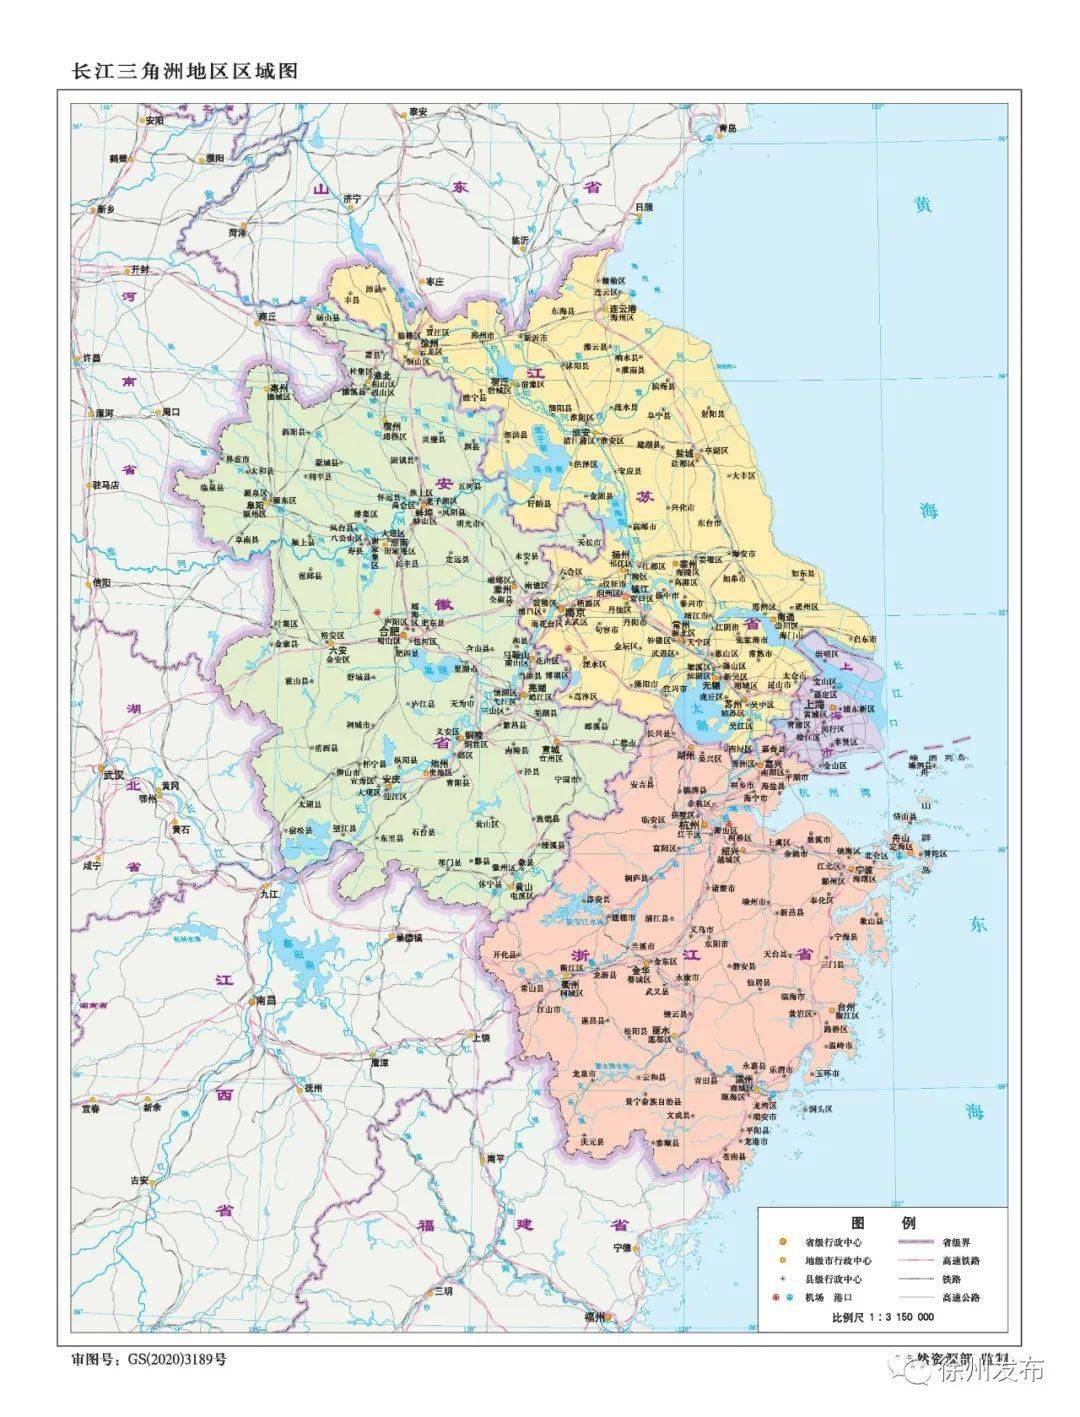 最新版徐州标准地图!快看你家在哪儿